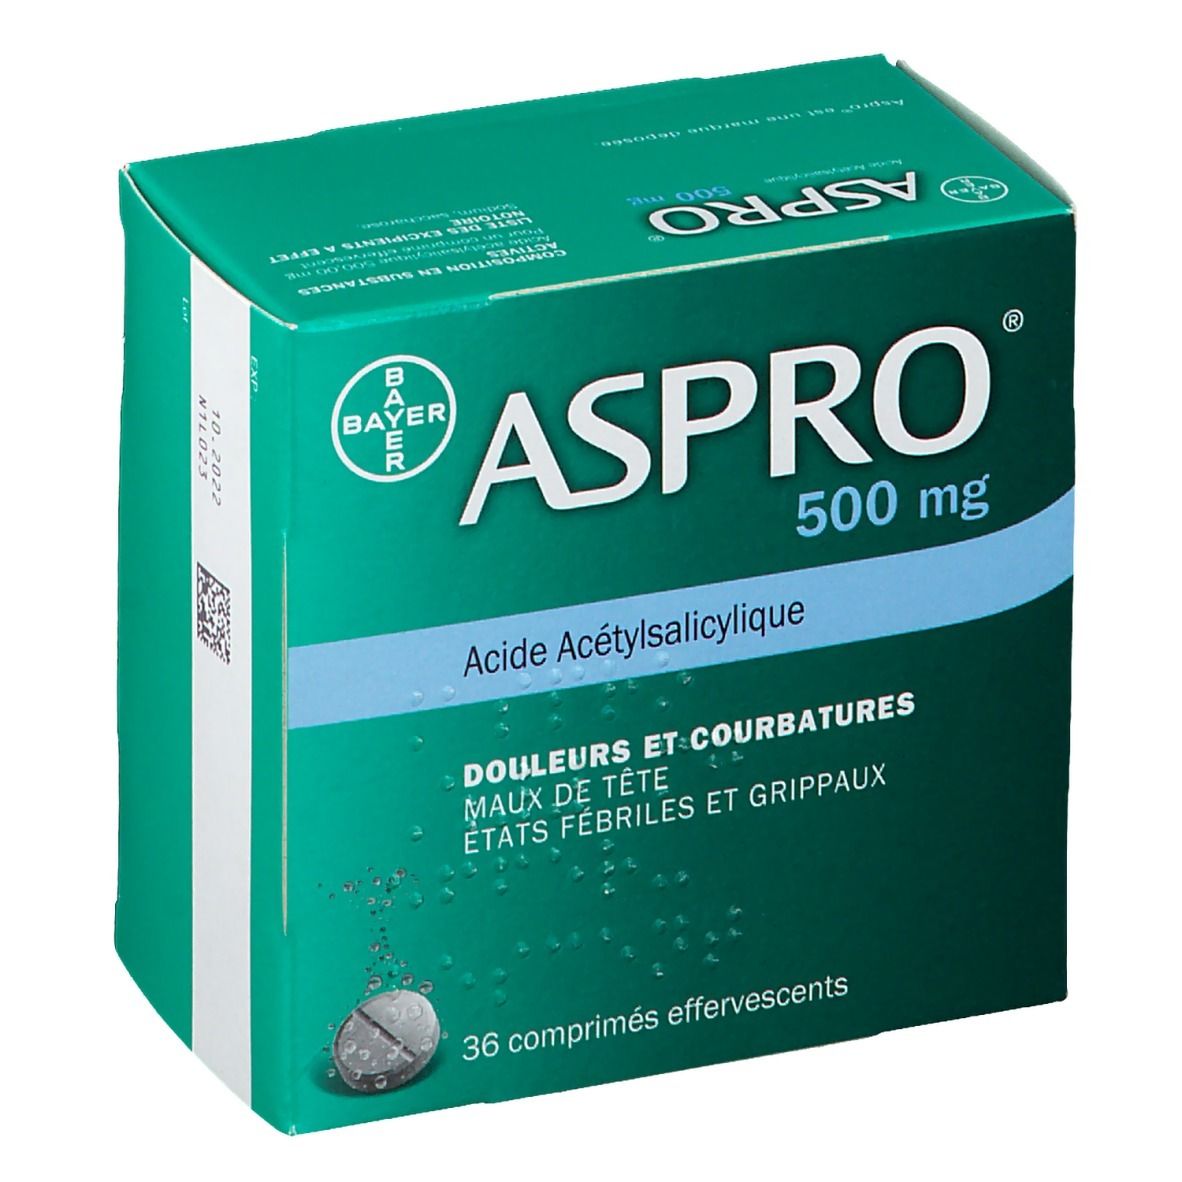 Aspro® 500 mg